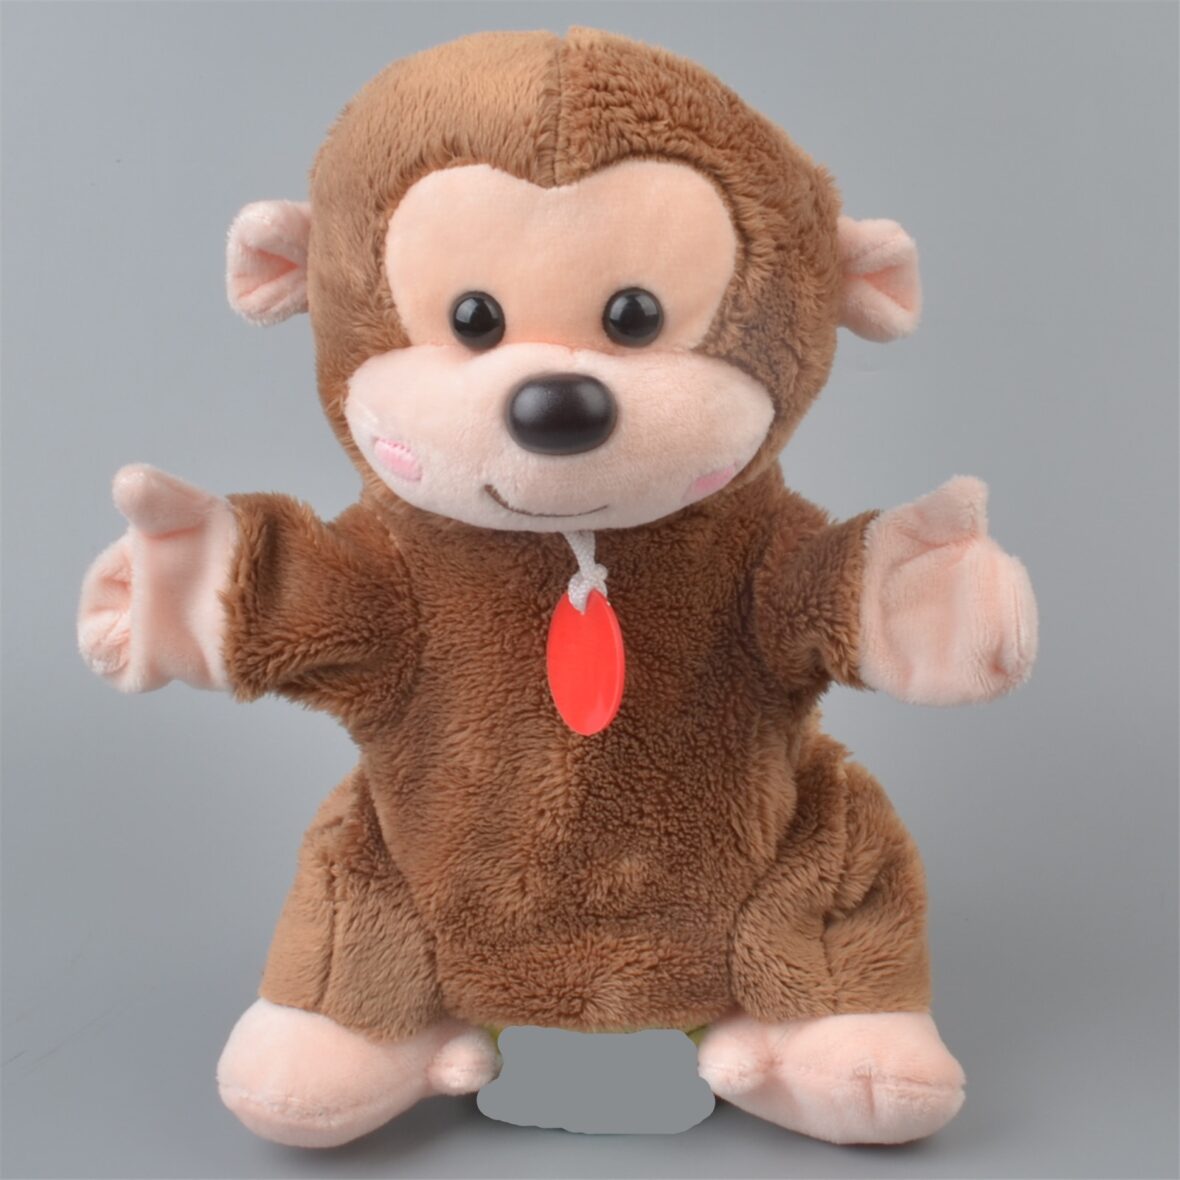 23cm Monkey Soft Plush Stuffed Hand Puppet